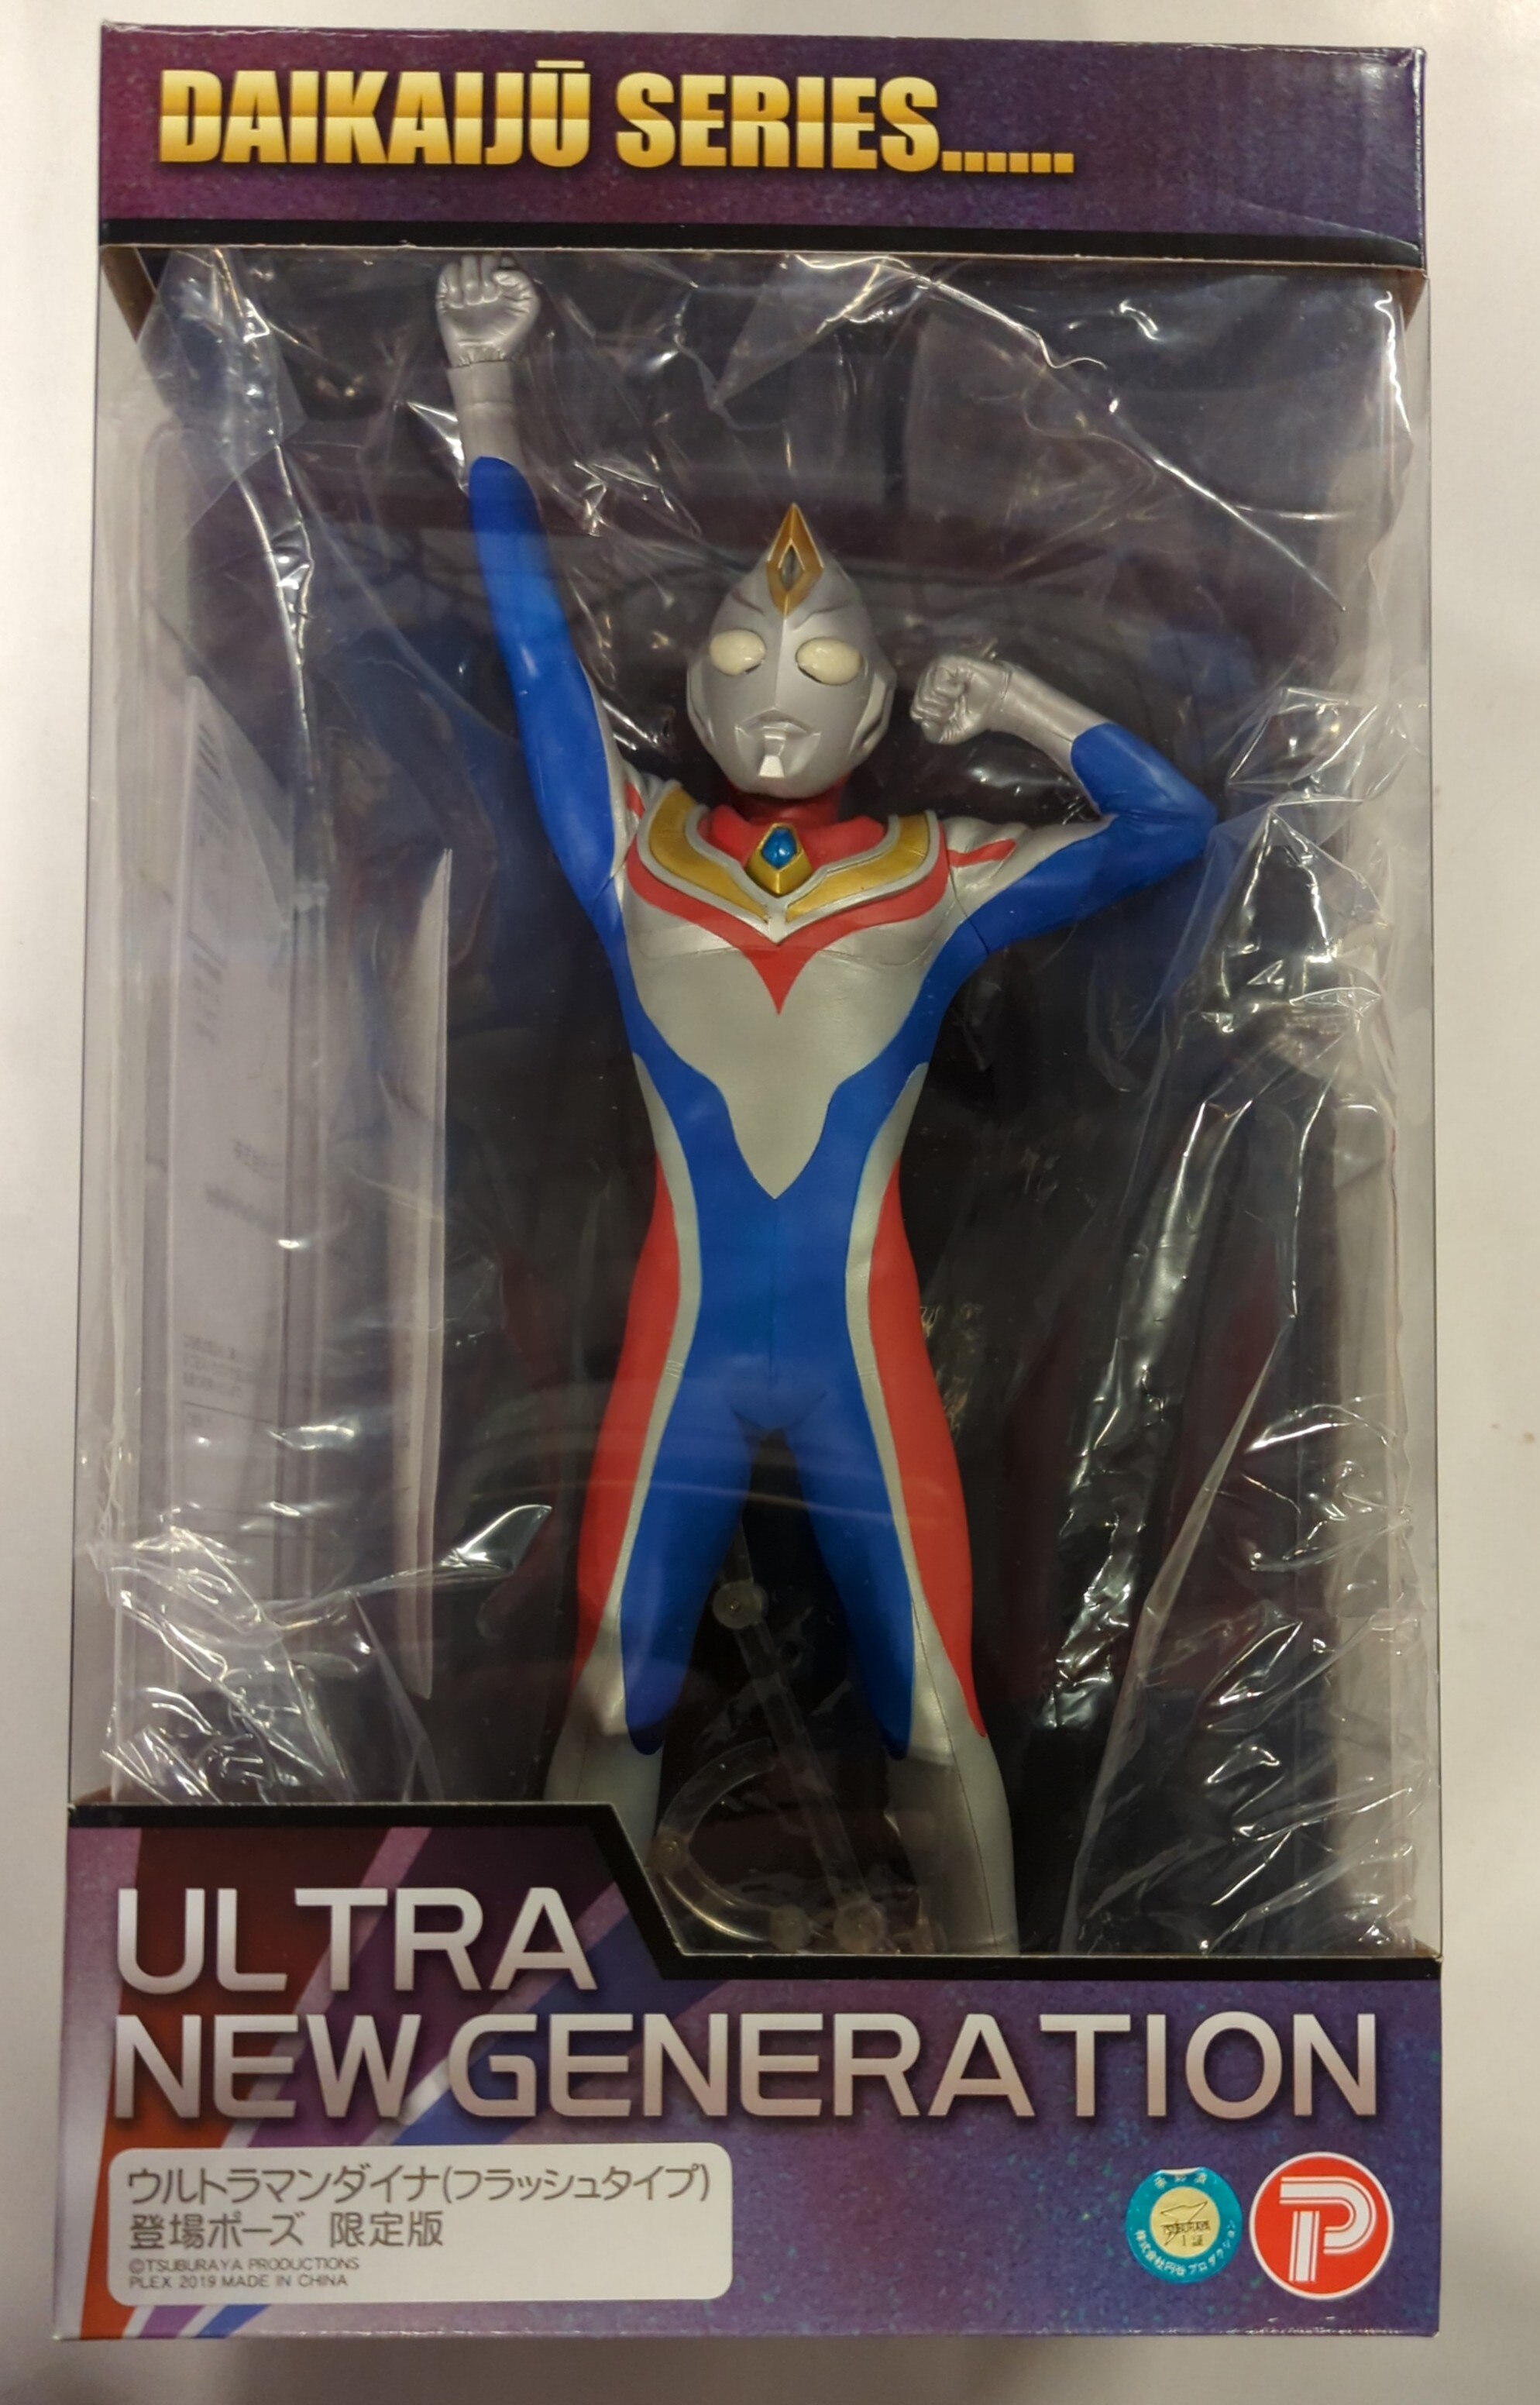 エクスプラス 大怪獣シリーズ ULTRA NEW GENERATION ウルトラマン